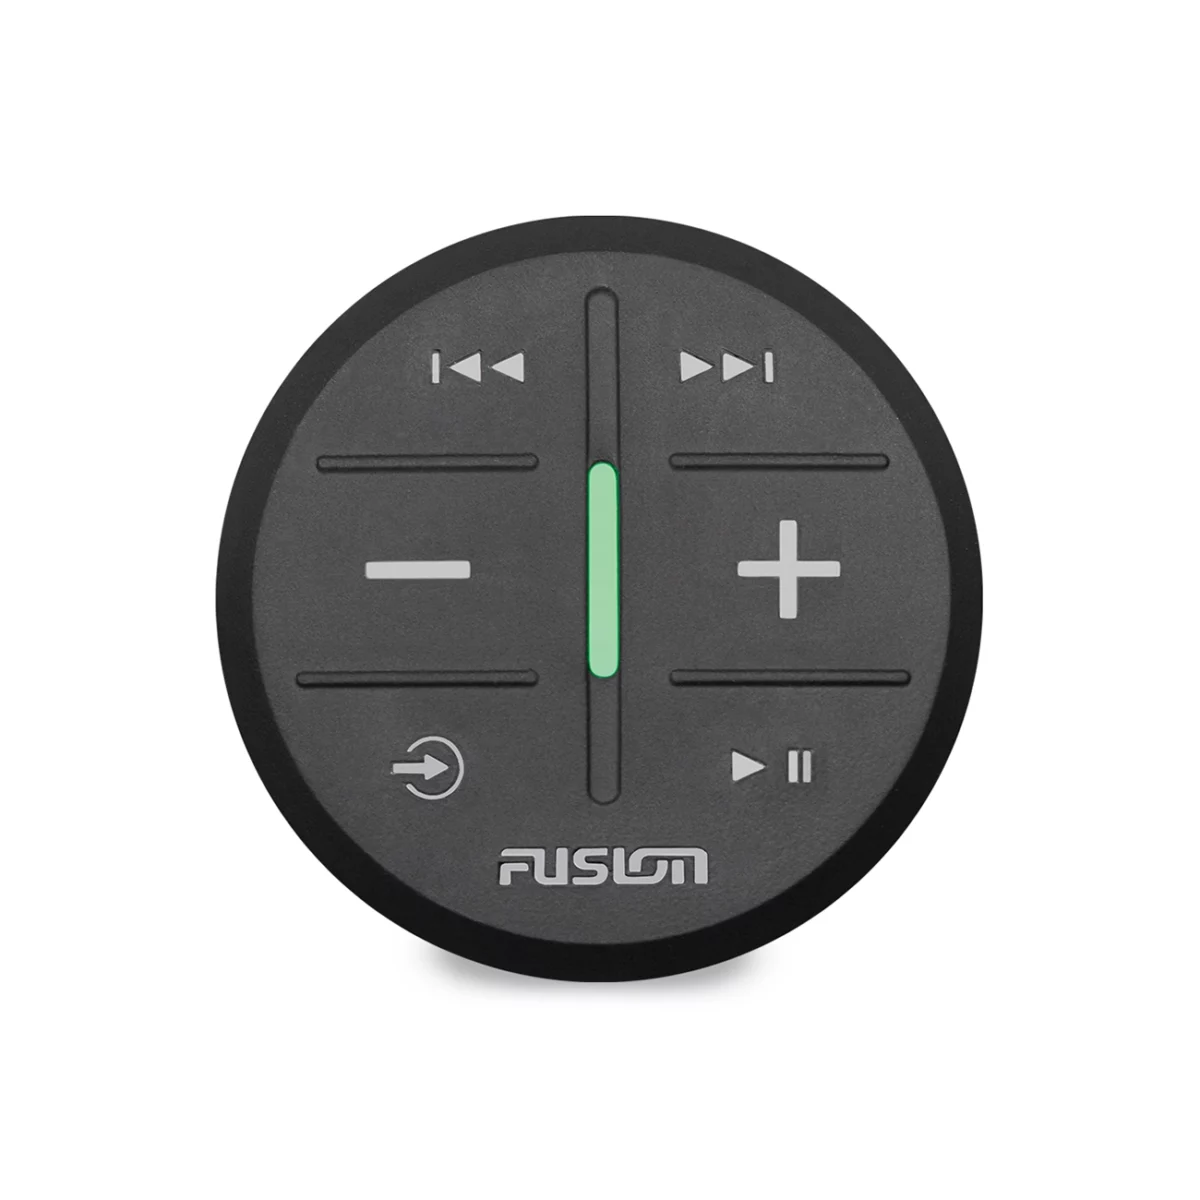 Garmin Fusion ARX Wireless Remote in black